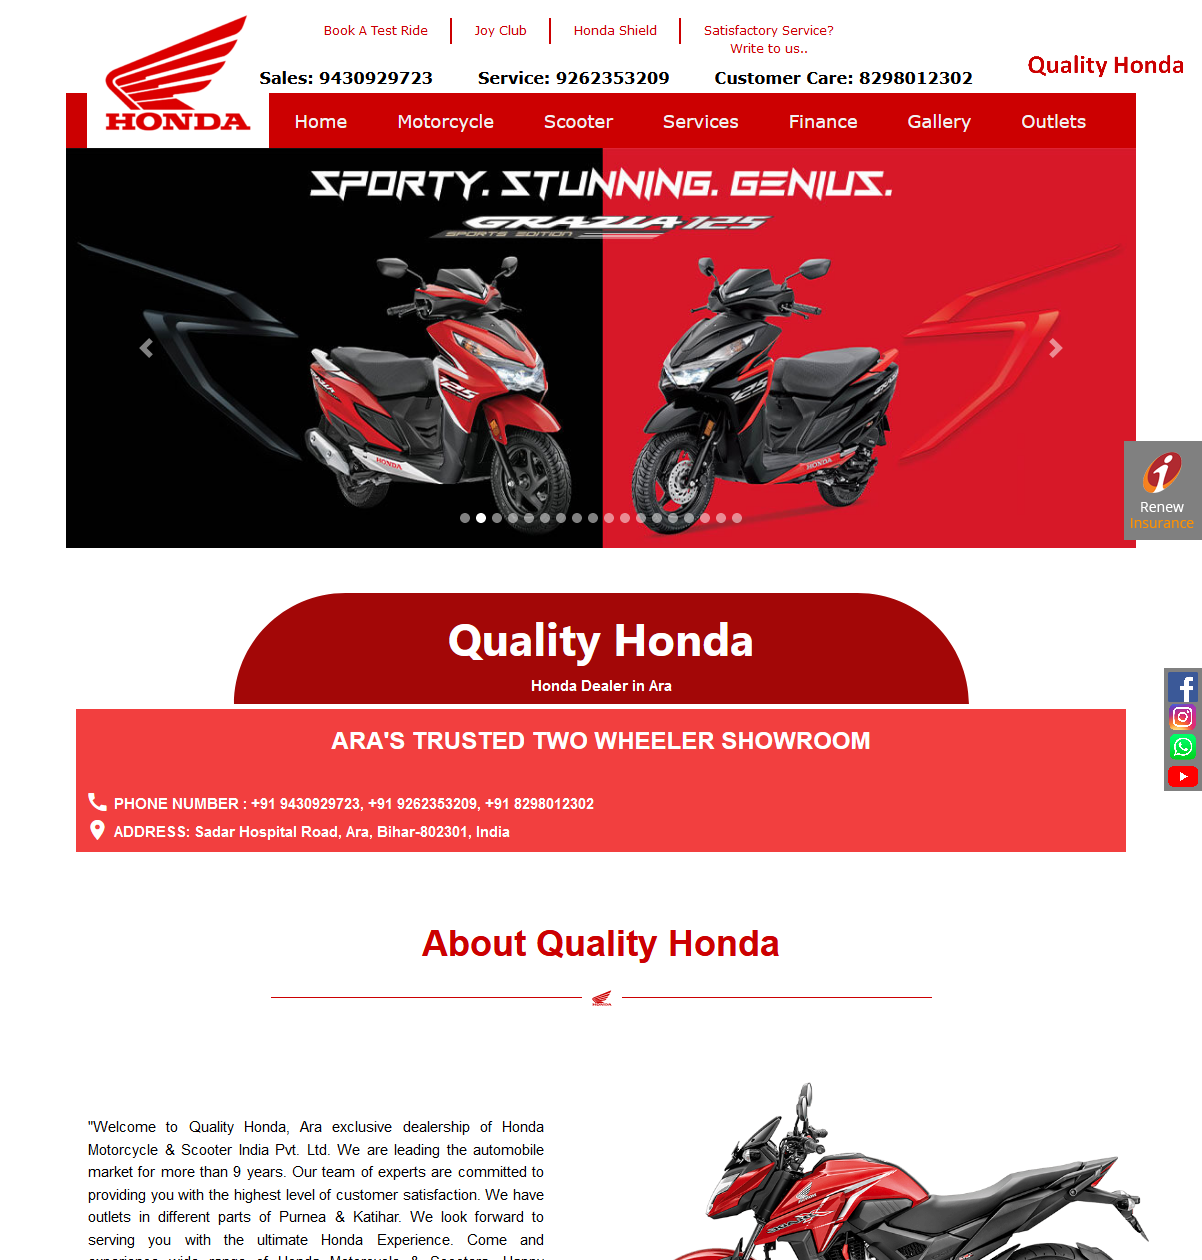  Quality Honda 